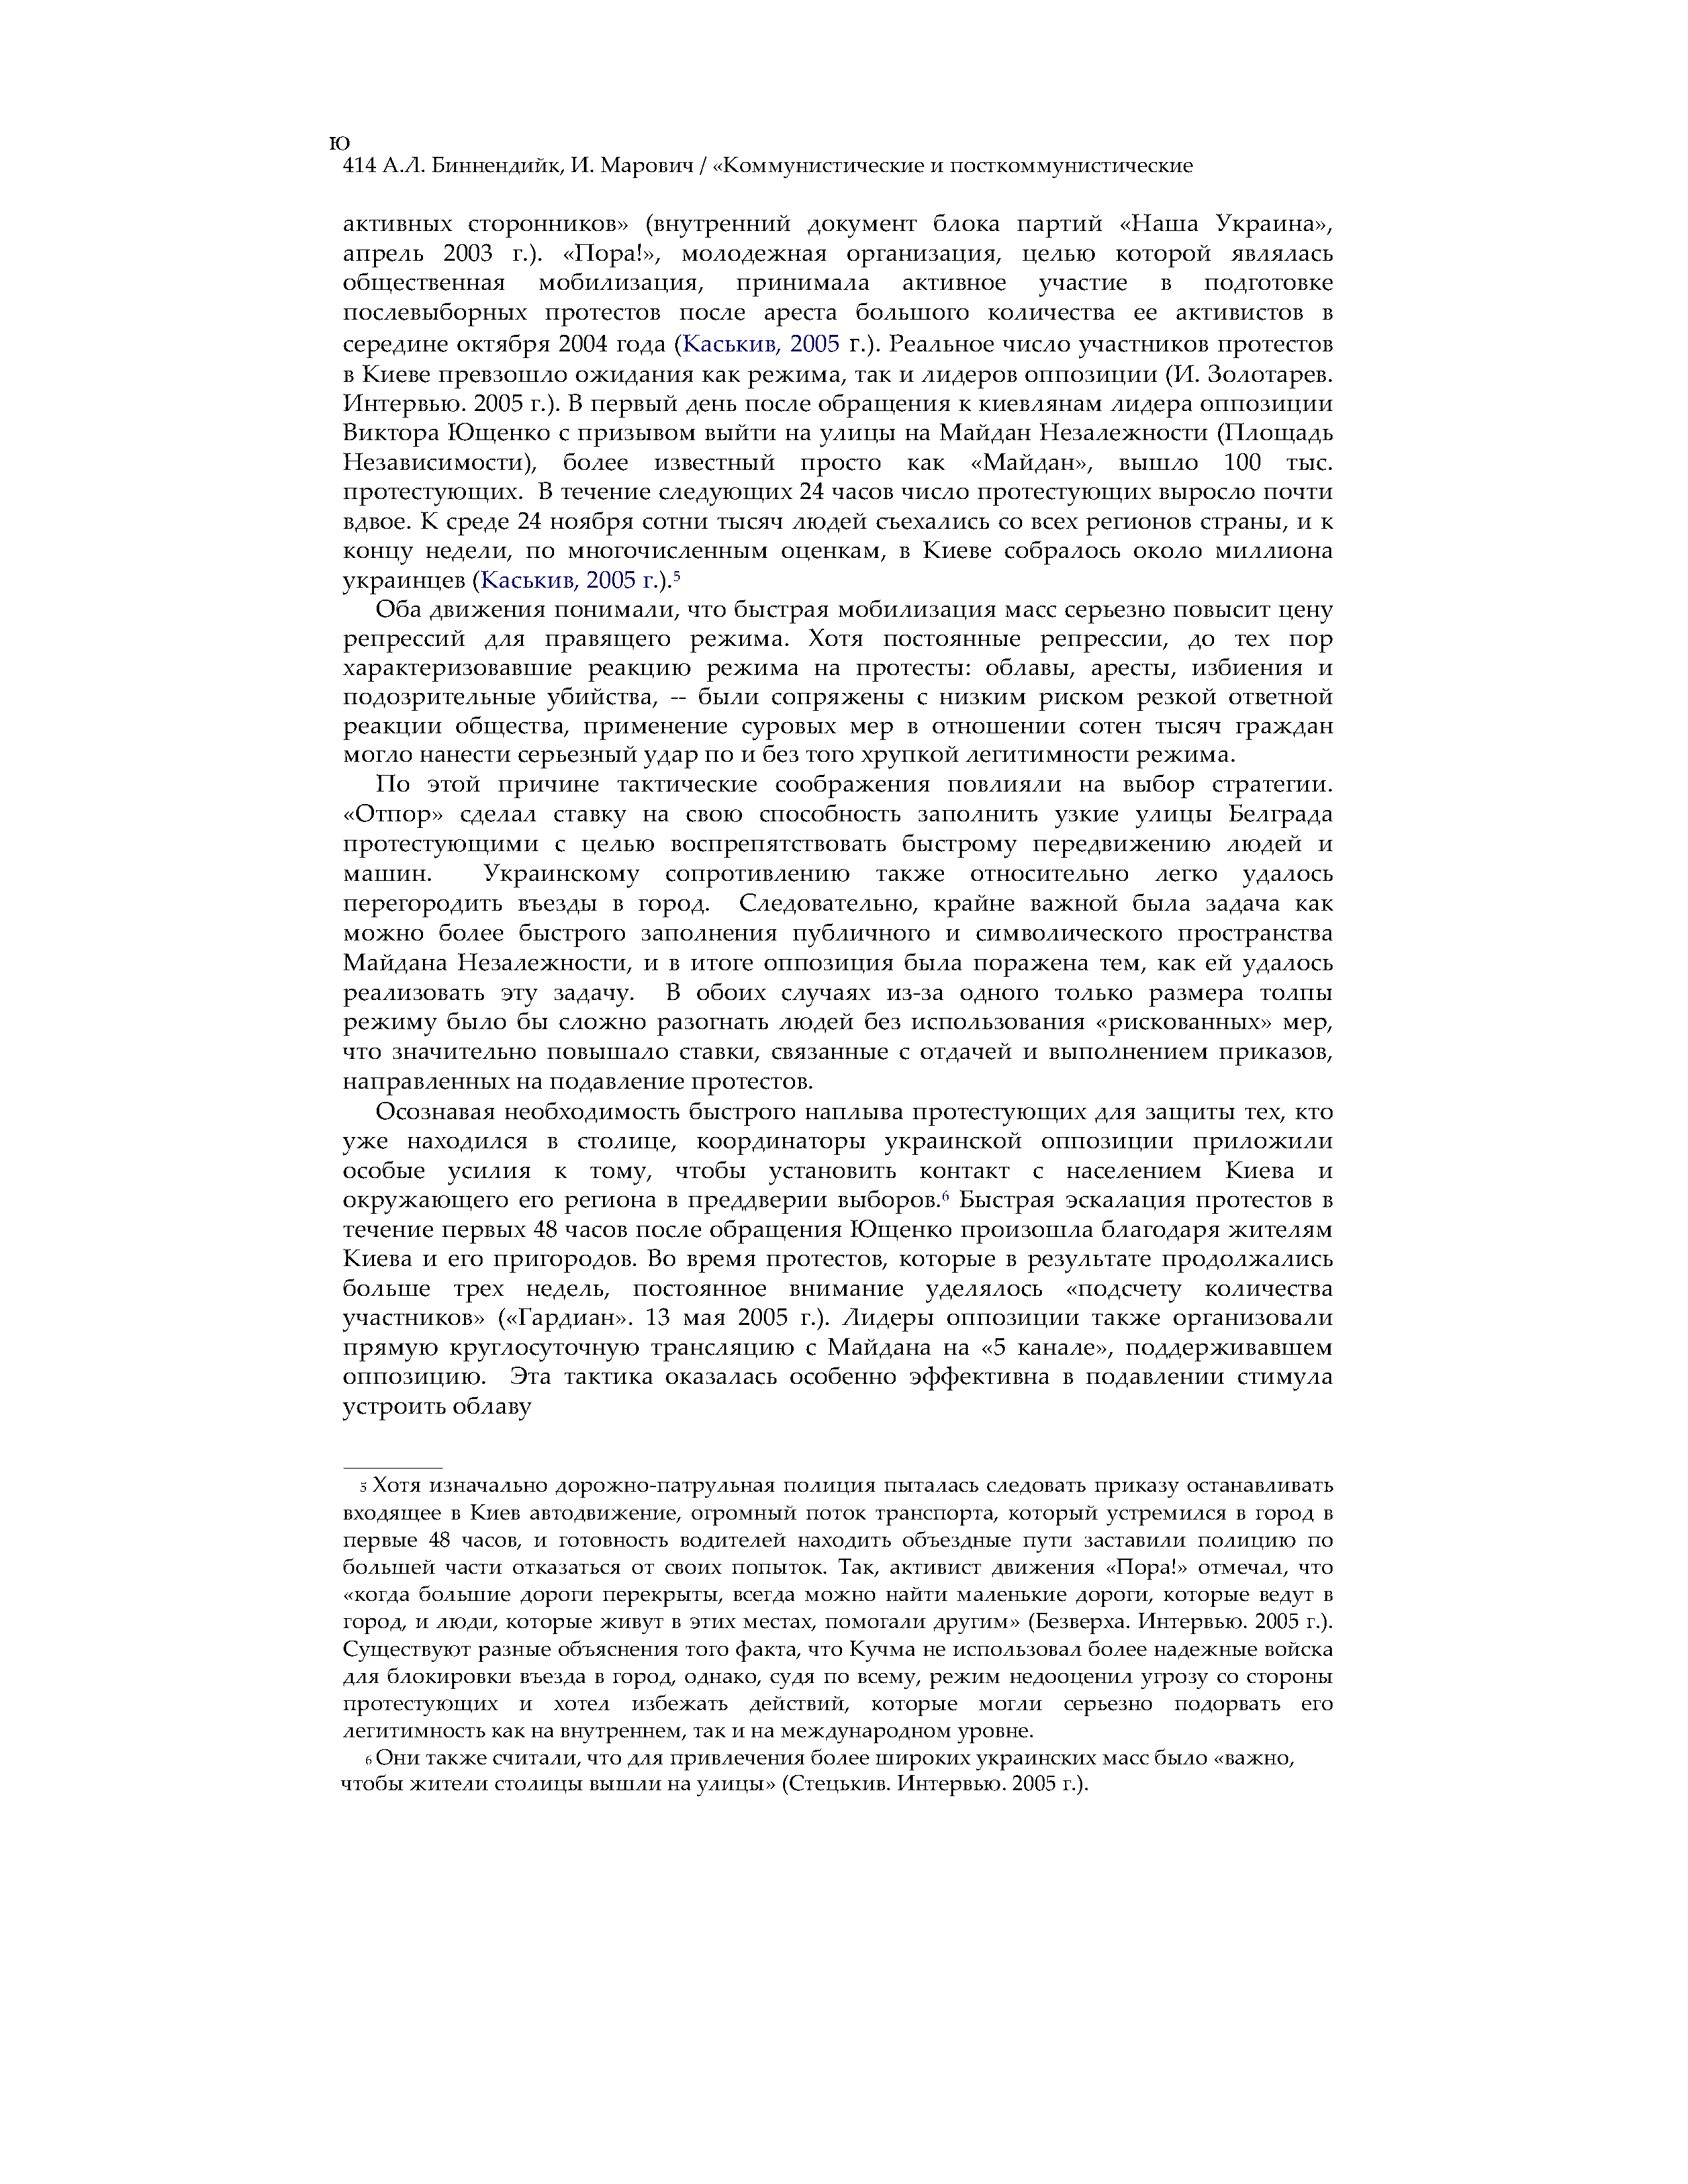 Сила и убеждение: Ненасильственные стратегии влияния на государственные службы безопасности в Сербии (2000) и Украине (2004)